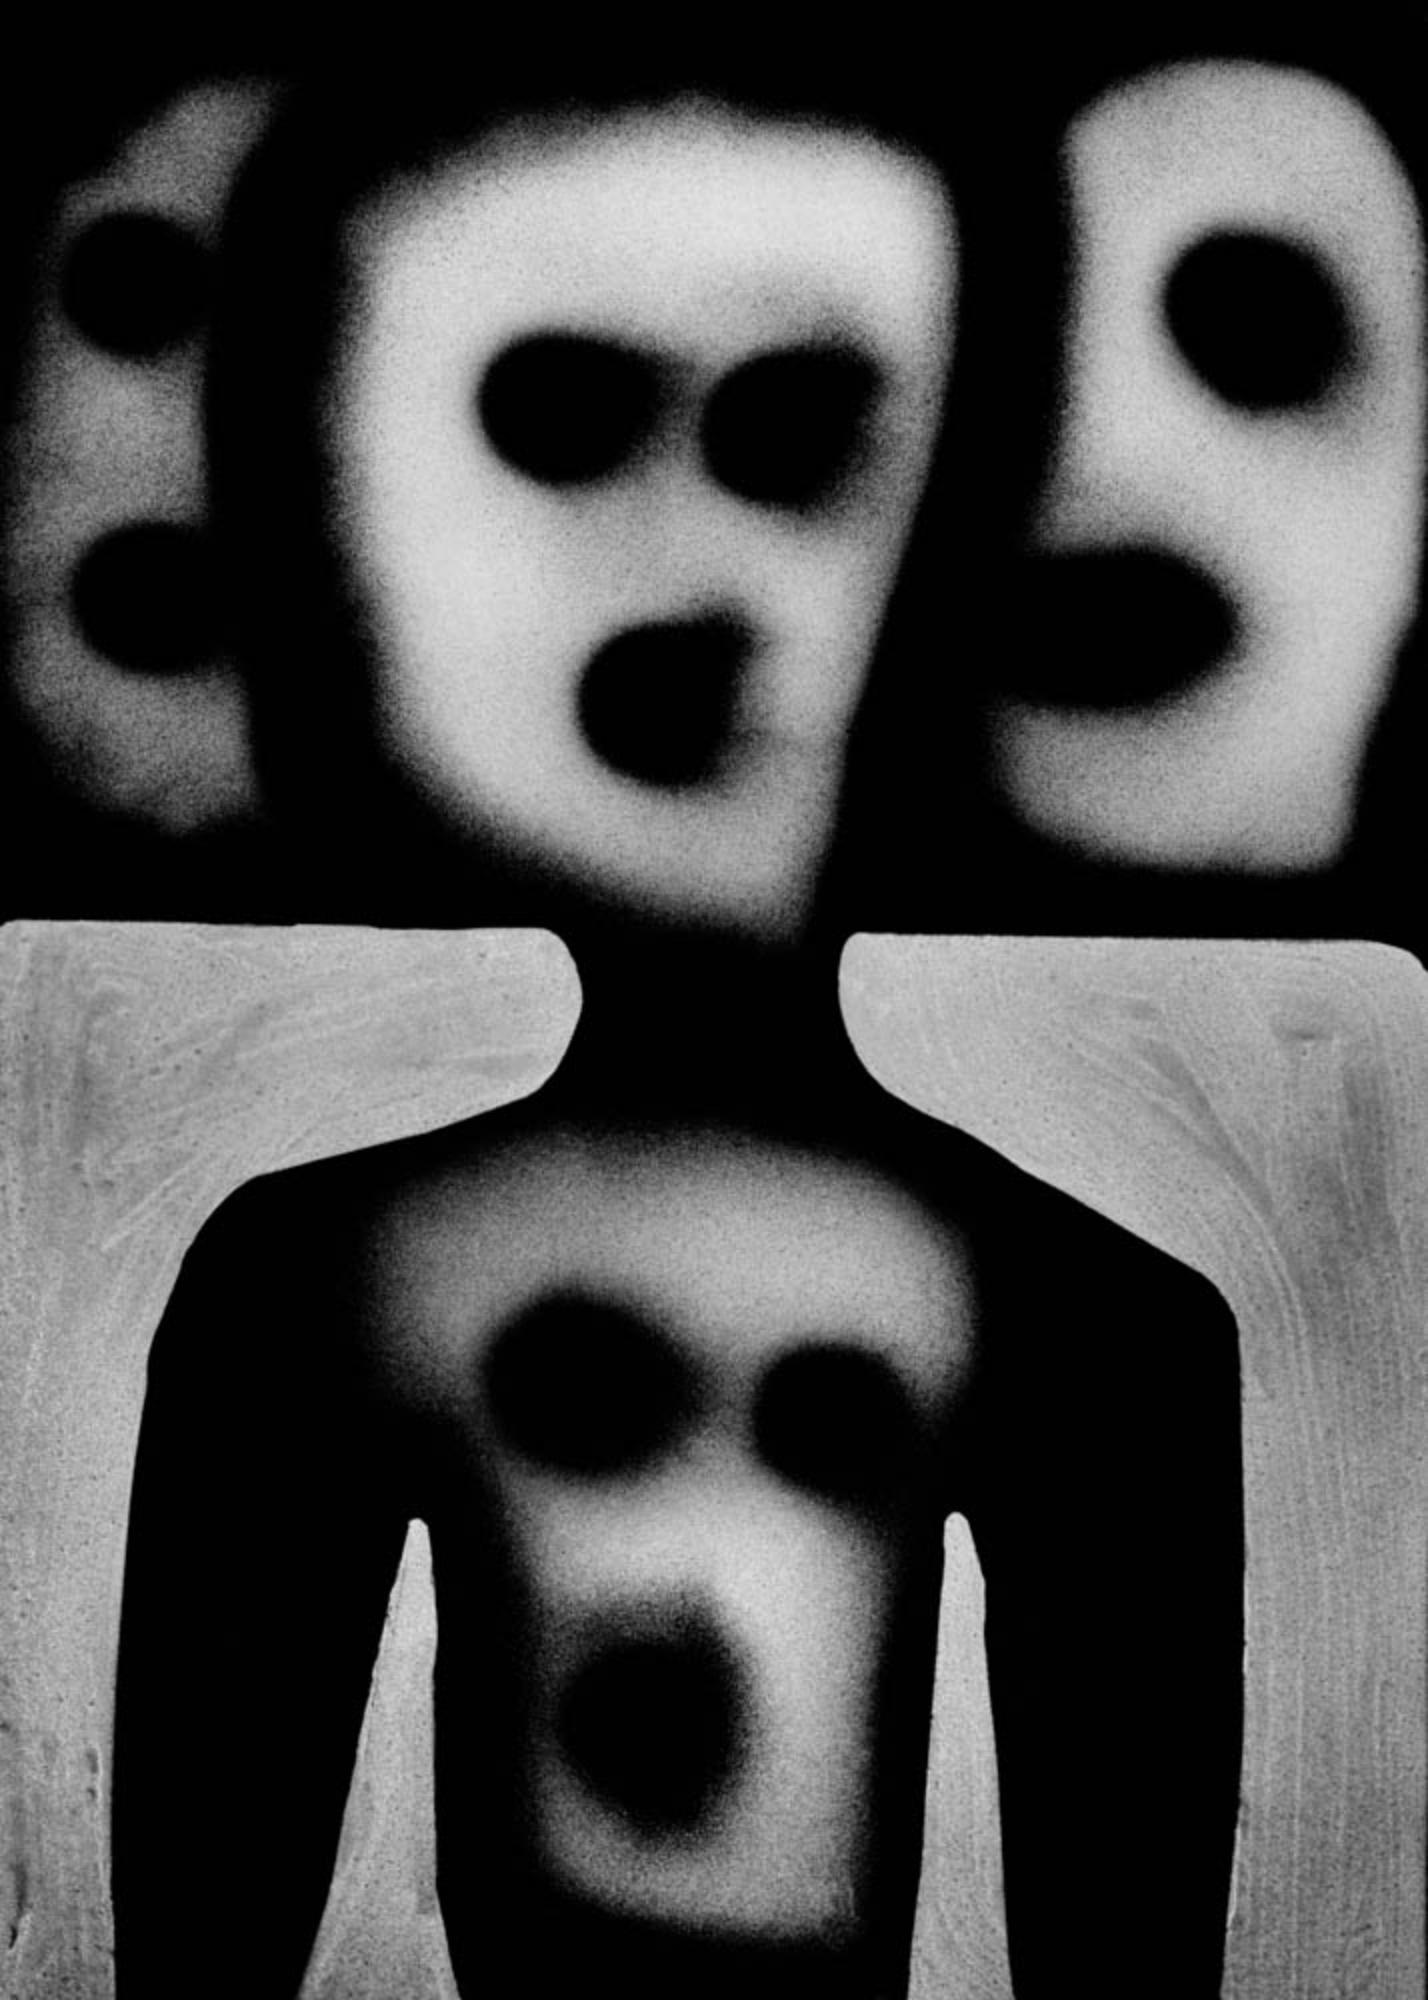 Roger Ballen
Voices, de la série "The Theatre of Apparitions", 2012
Caisson lumineux Texflex simple face, revêtement époxy noir ferro
Caisson lumineux 100 x 86 x 9 cm (39 3/8 x 33 7/8 x 3 1/2 in.)
Édition de 3 (#1/3)

Tous les caissons lumineux